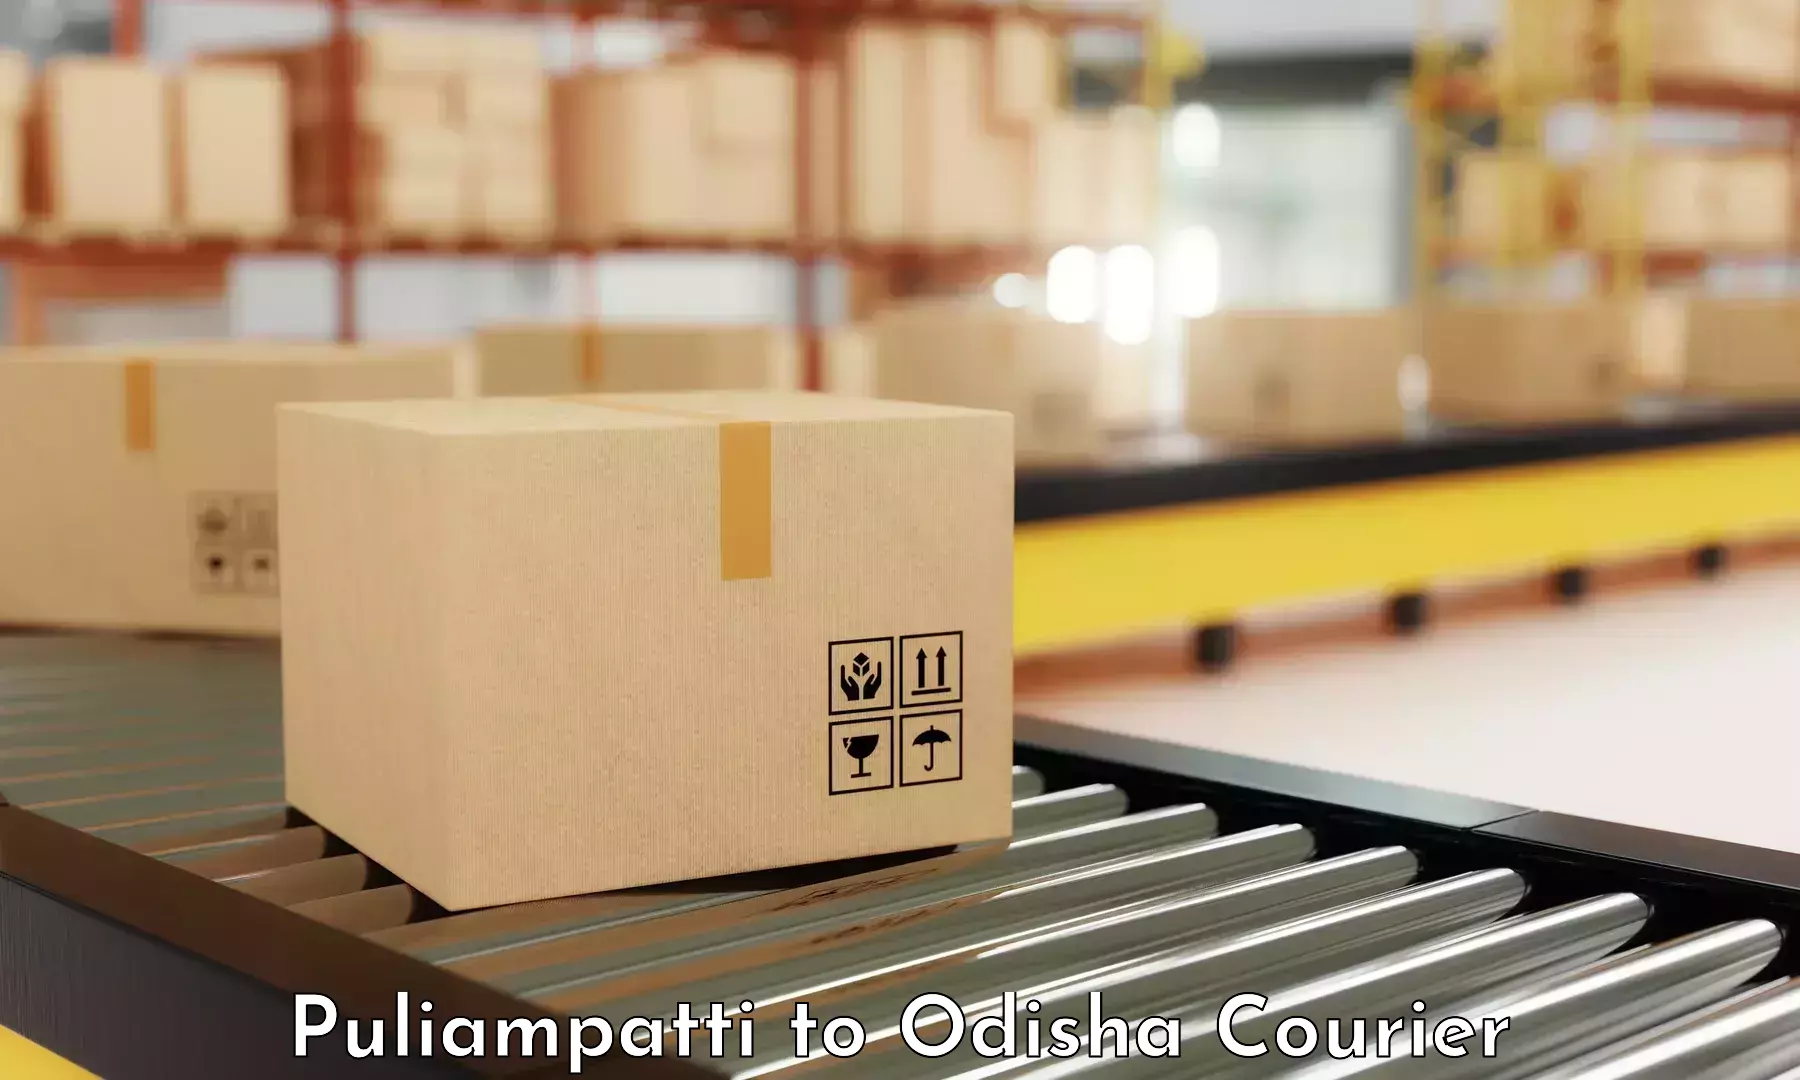 Efficient parcel service Puliampatti to Jeypore